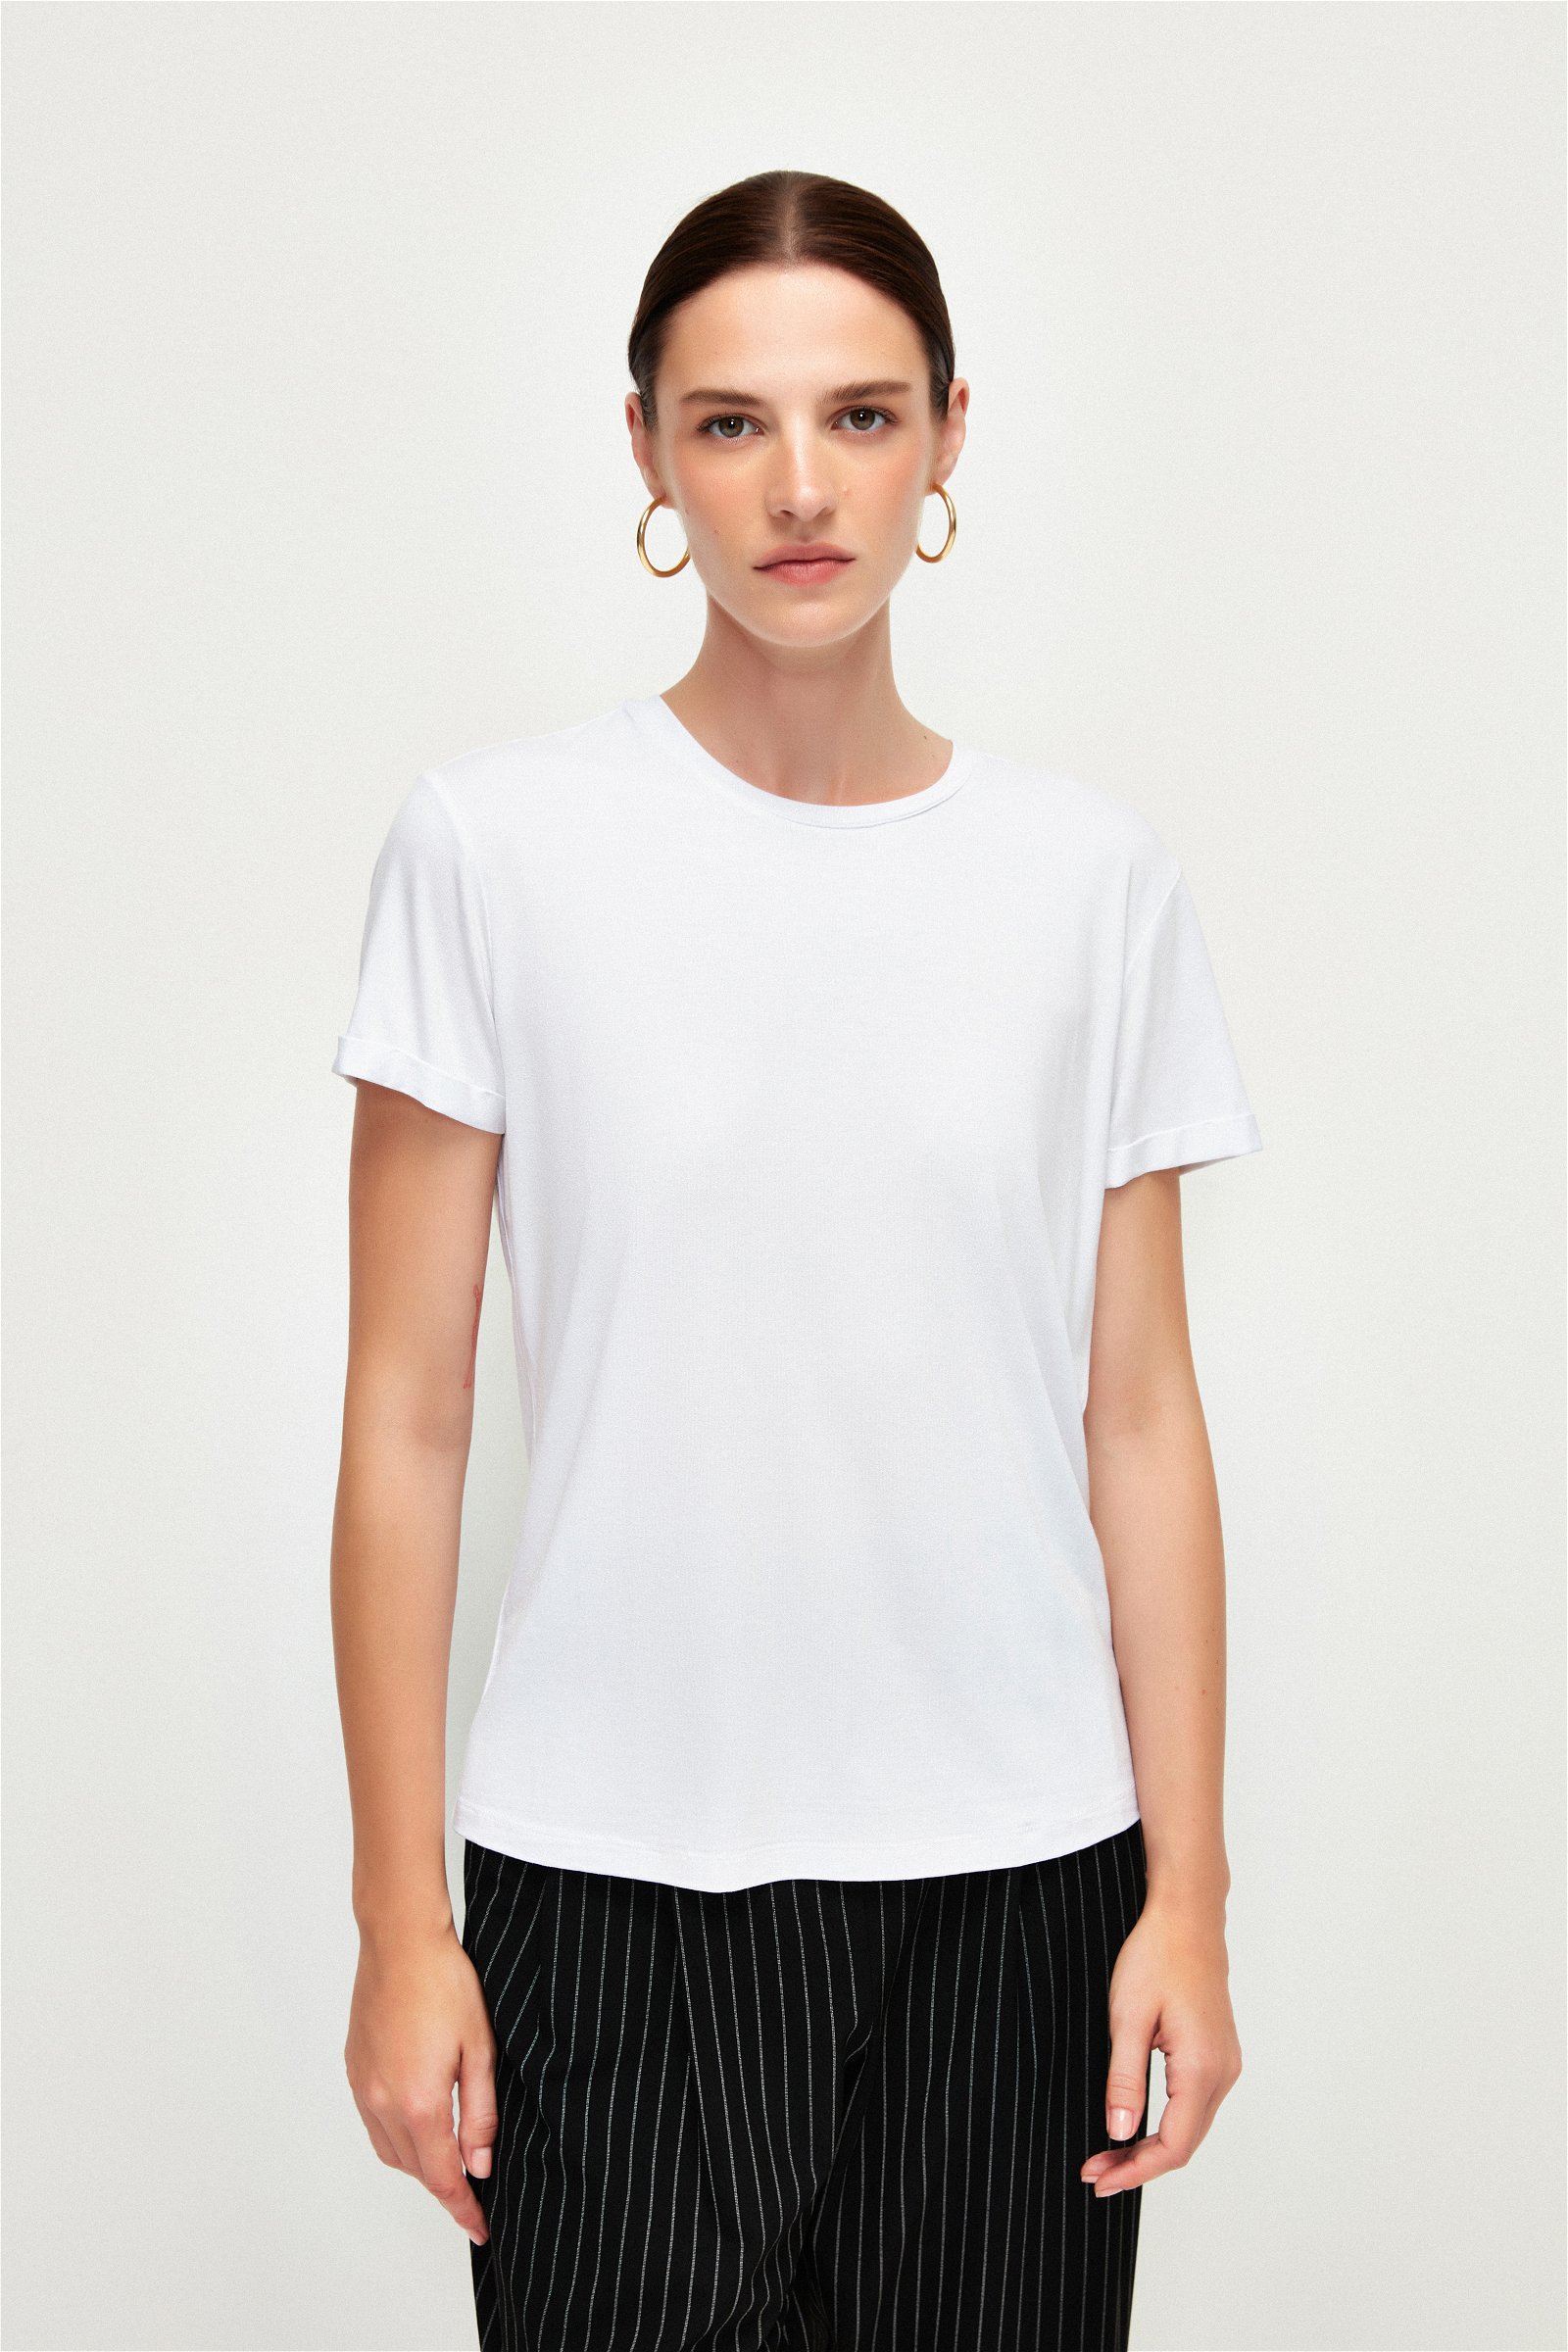 Kadın Tişört, Baskılı & Crop Tişört Modelleri | adL